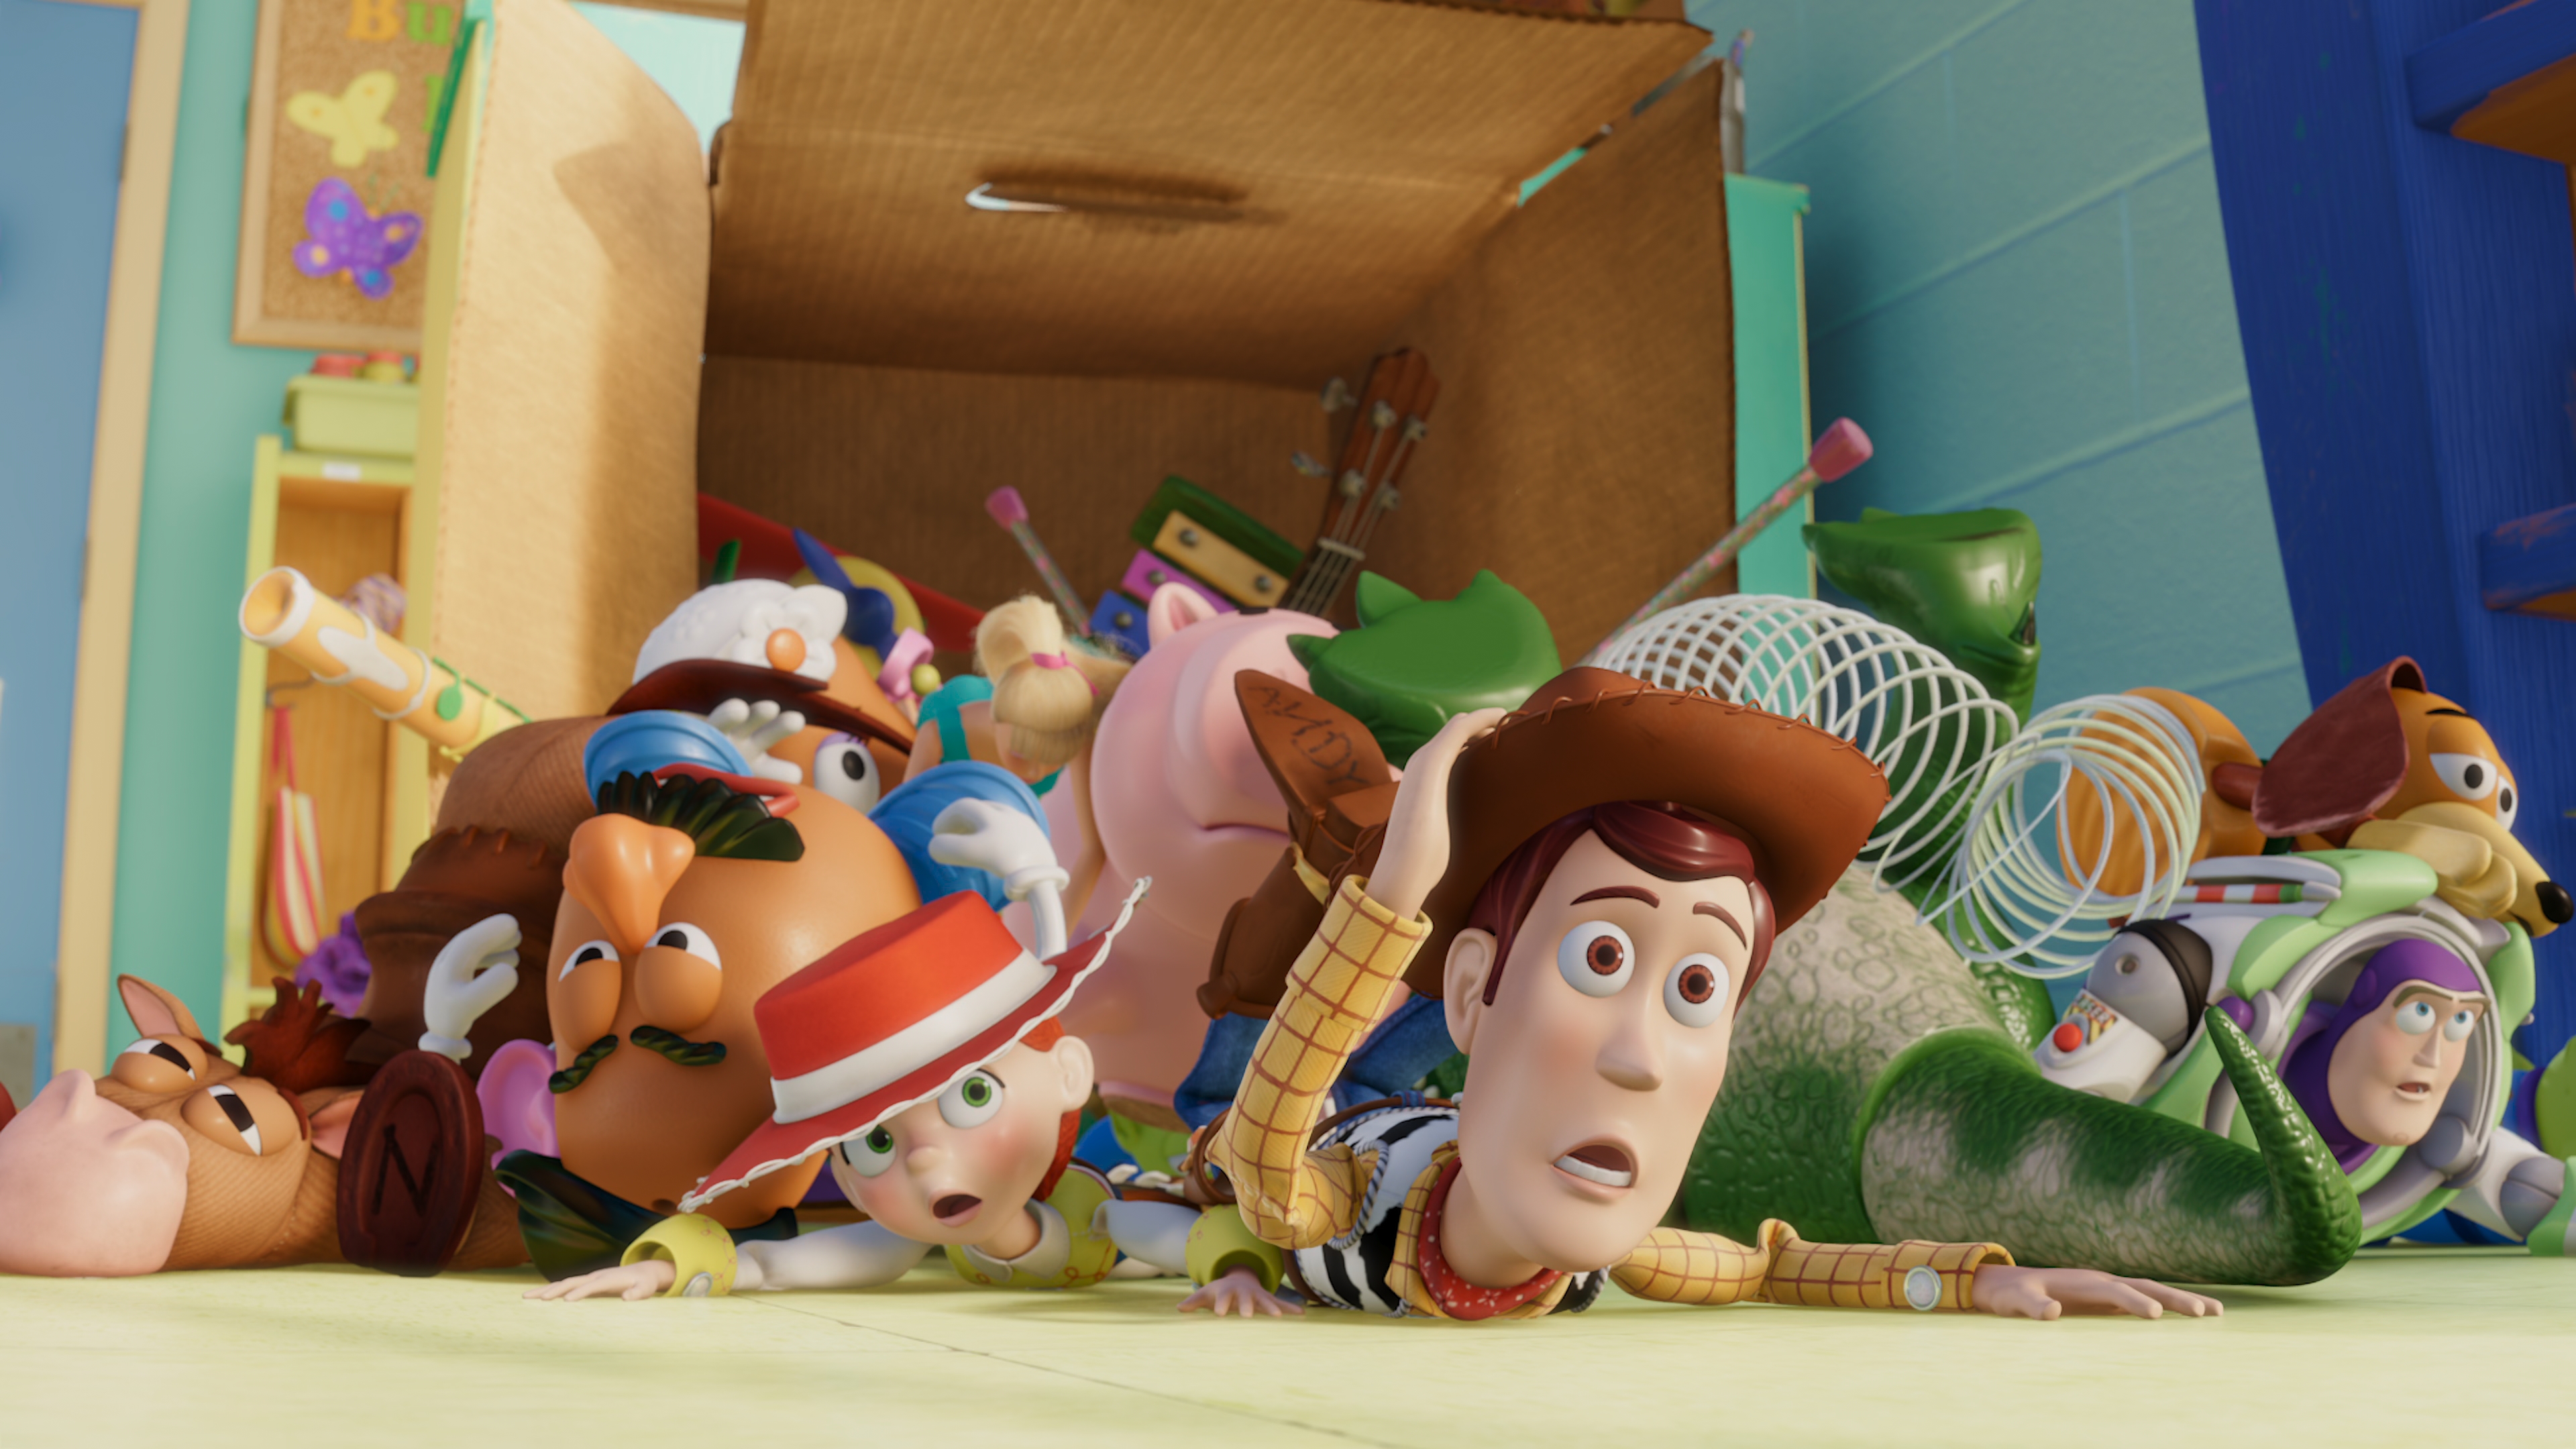 Adventure story 3. История игрушек 3 большой побег. История игрушек: большой побег / Toy story 3. Disney Pixar Toy story 3. История игрушек 3 большой побег 2010.